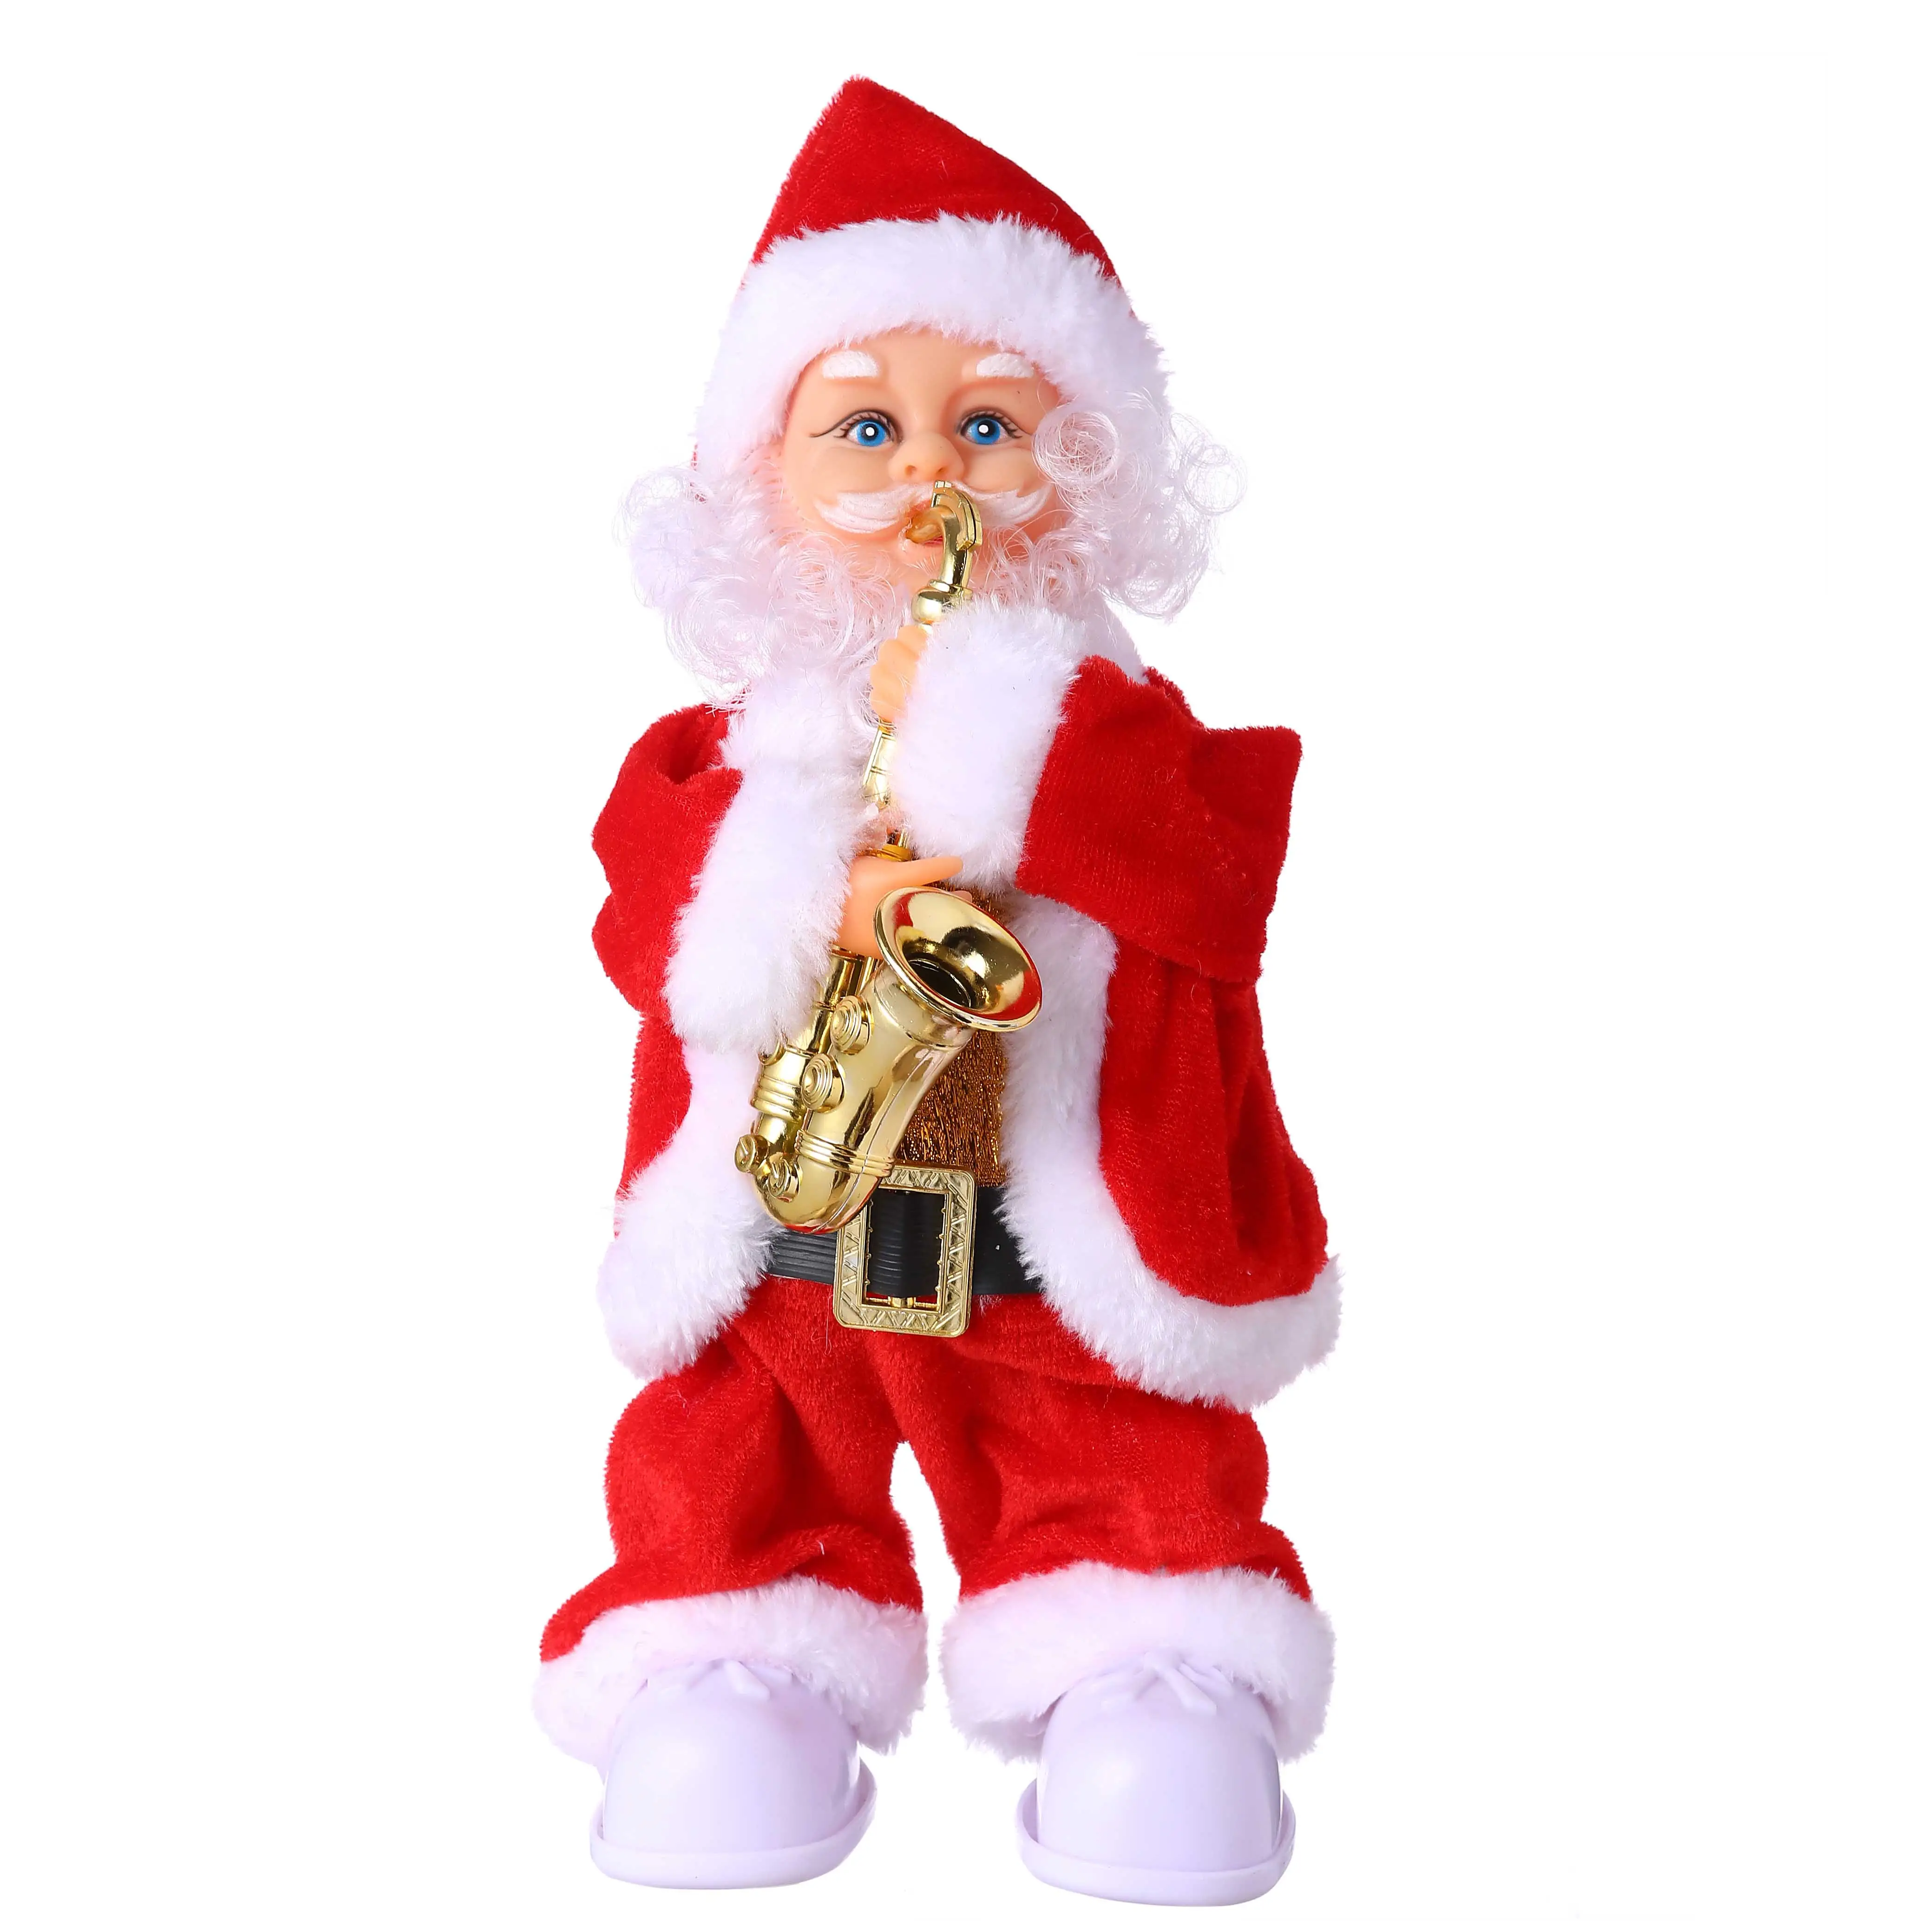 12 Inch Dancing Santa Clause Saxophone Santa Claus Holiday Christmas Decorations